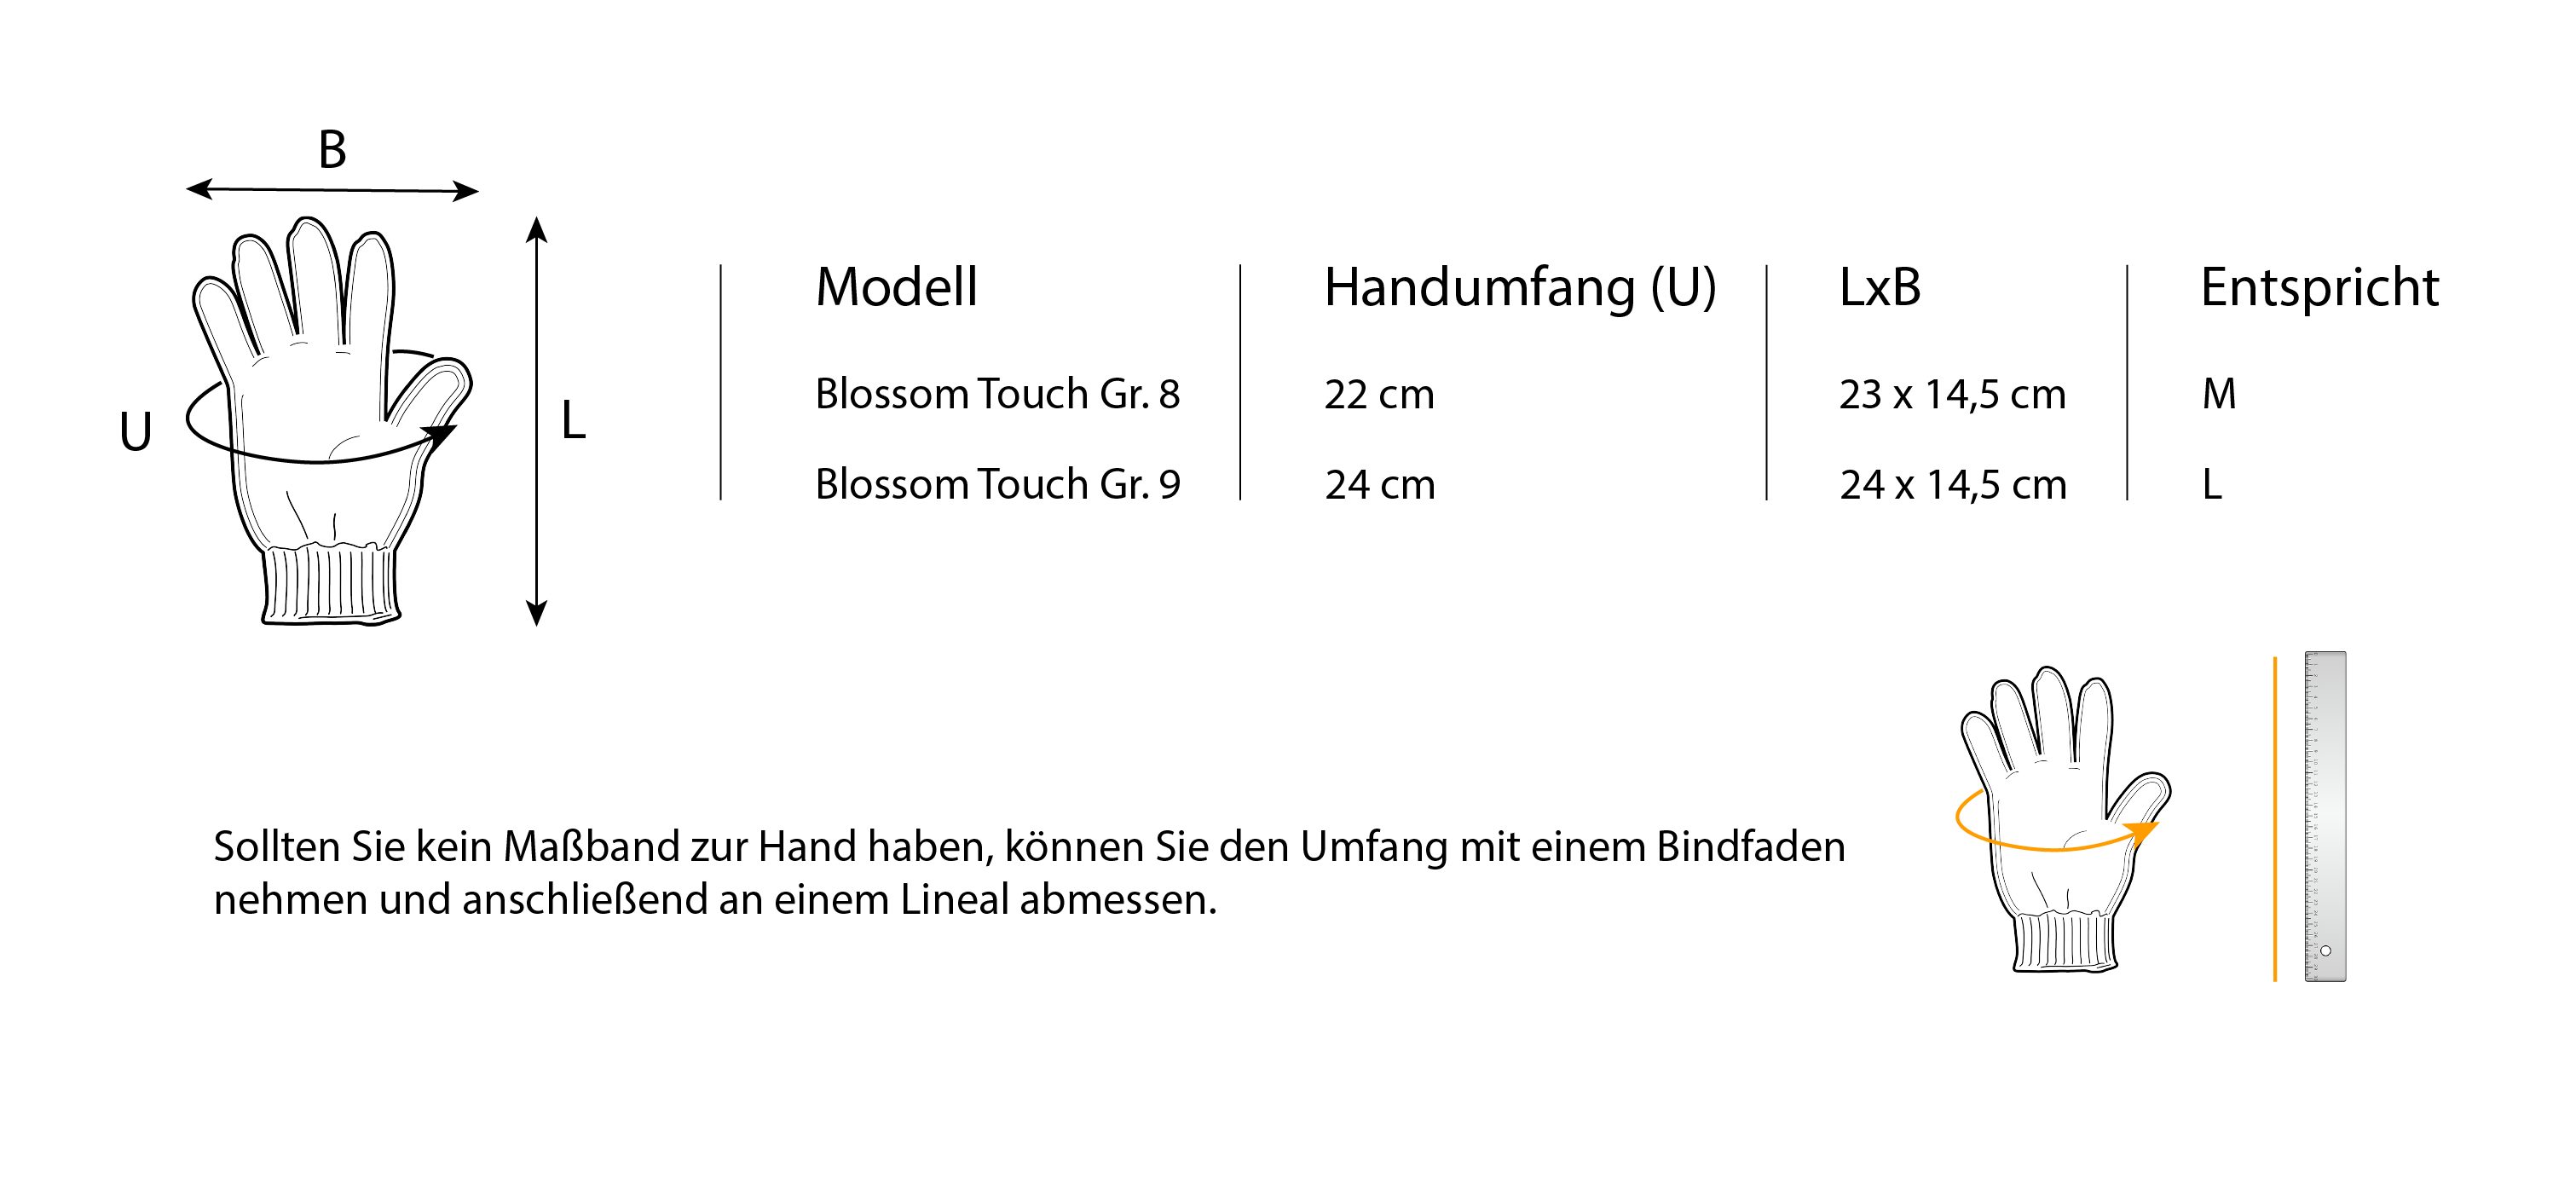 Blossom Gr. L Gartenhandschuhe Set, TECH-CRAFT 9 3 (3er Paar) Gartenhandschuhe Touchscreen-Finger Touch